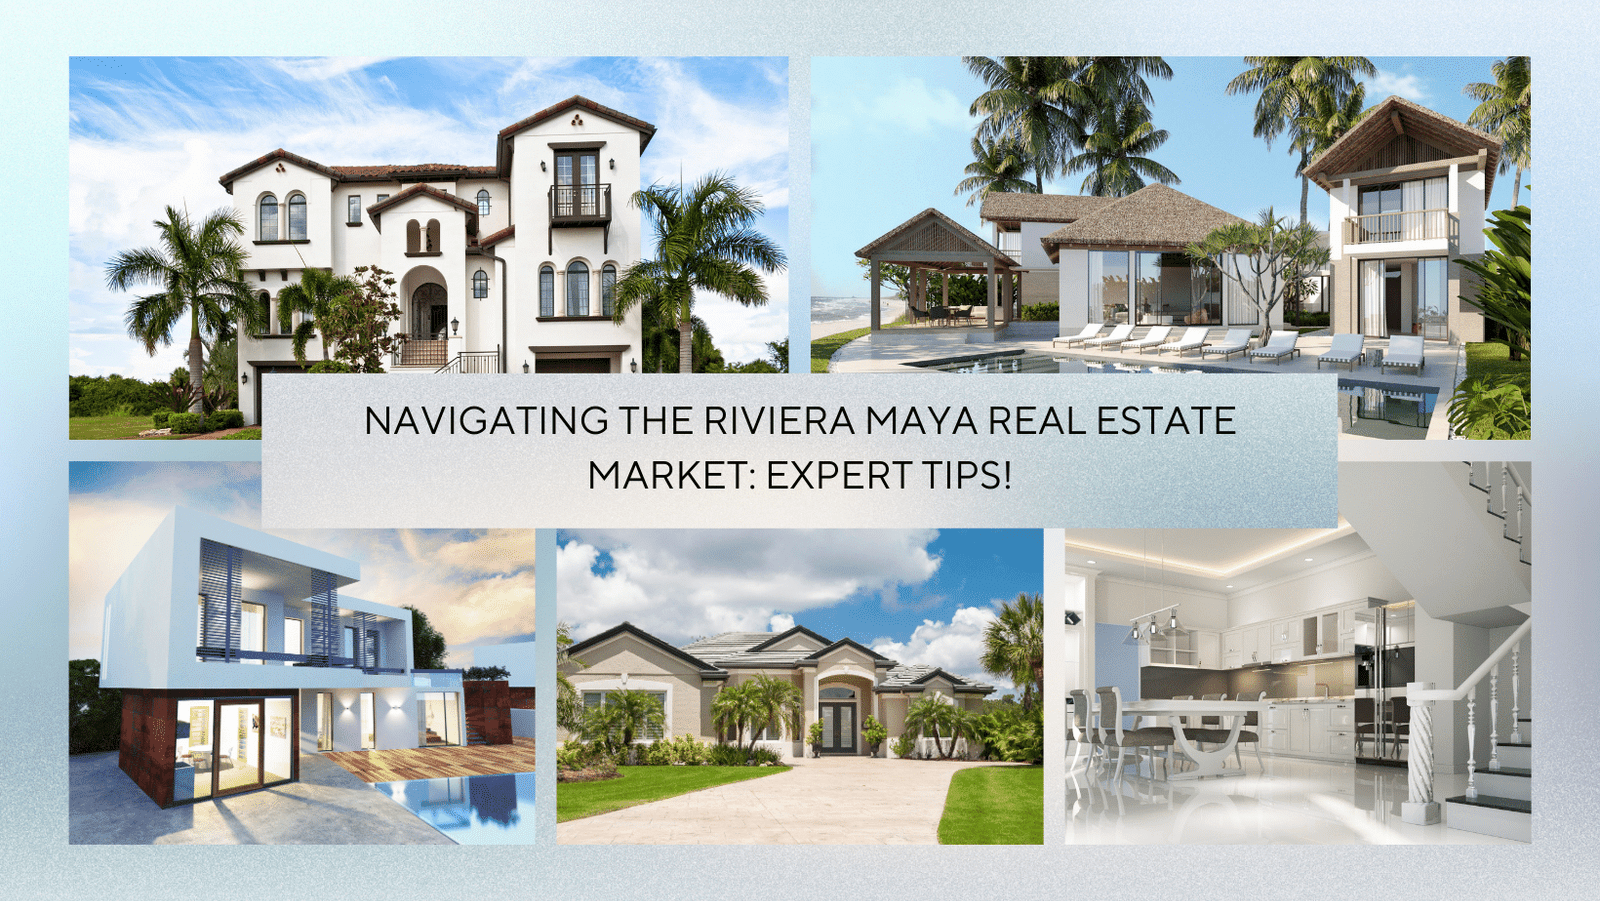 Navigating the Riviera Maya Real Estate Market Expert Tips!